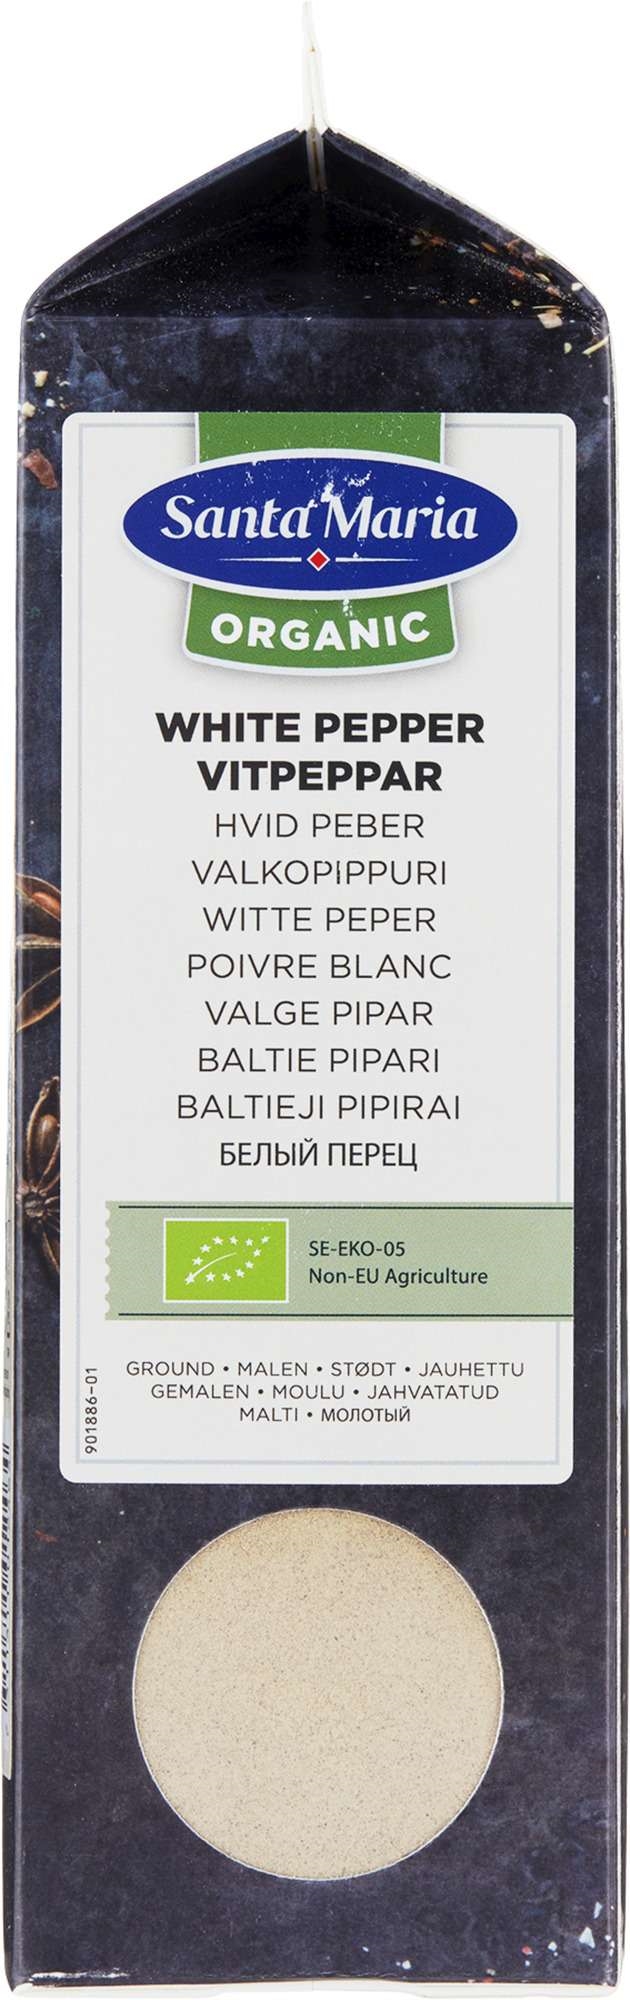 Hvit pepper malt økol.   555g